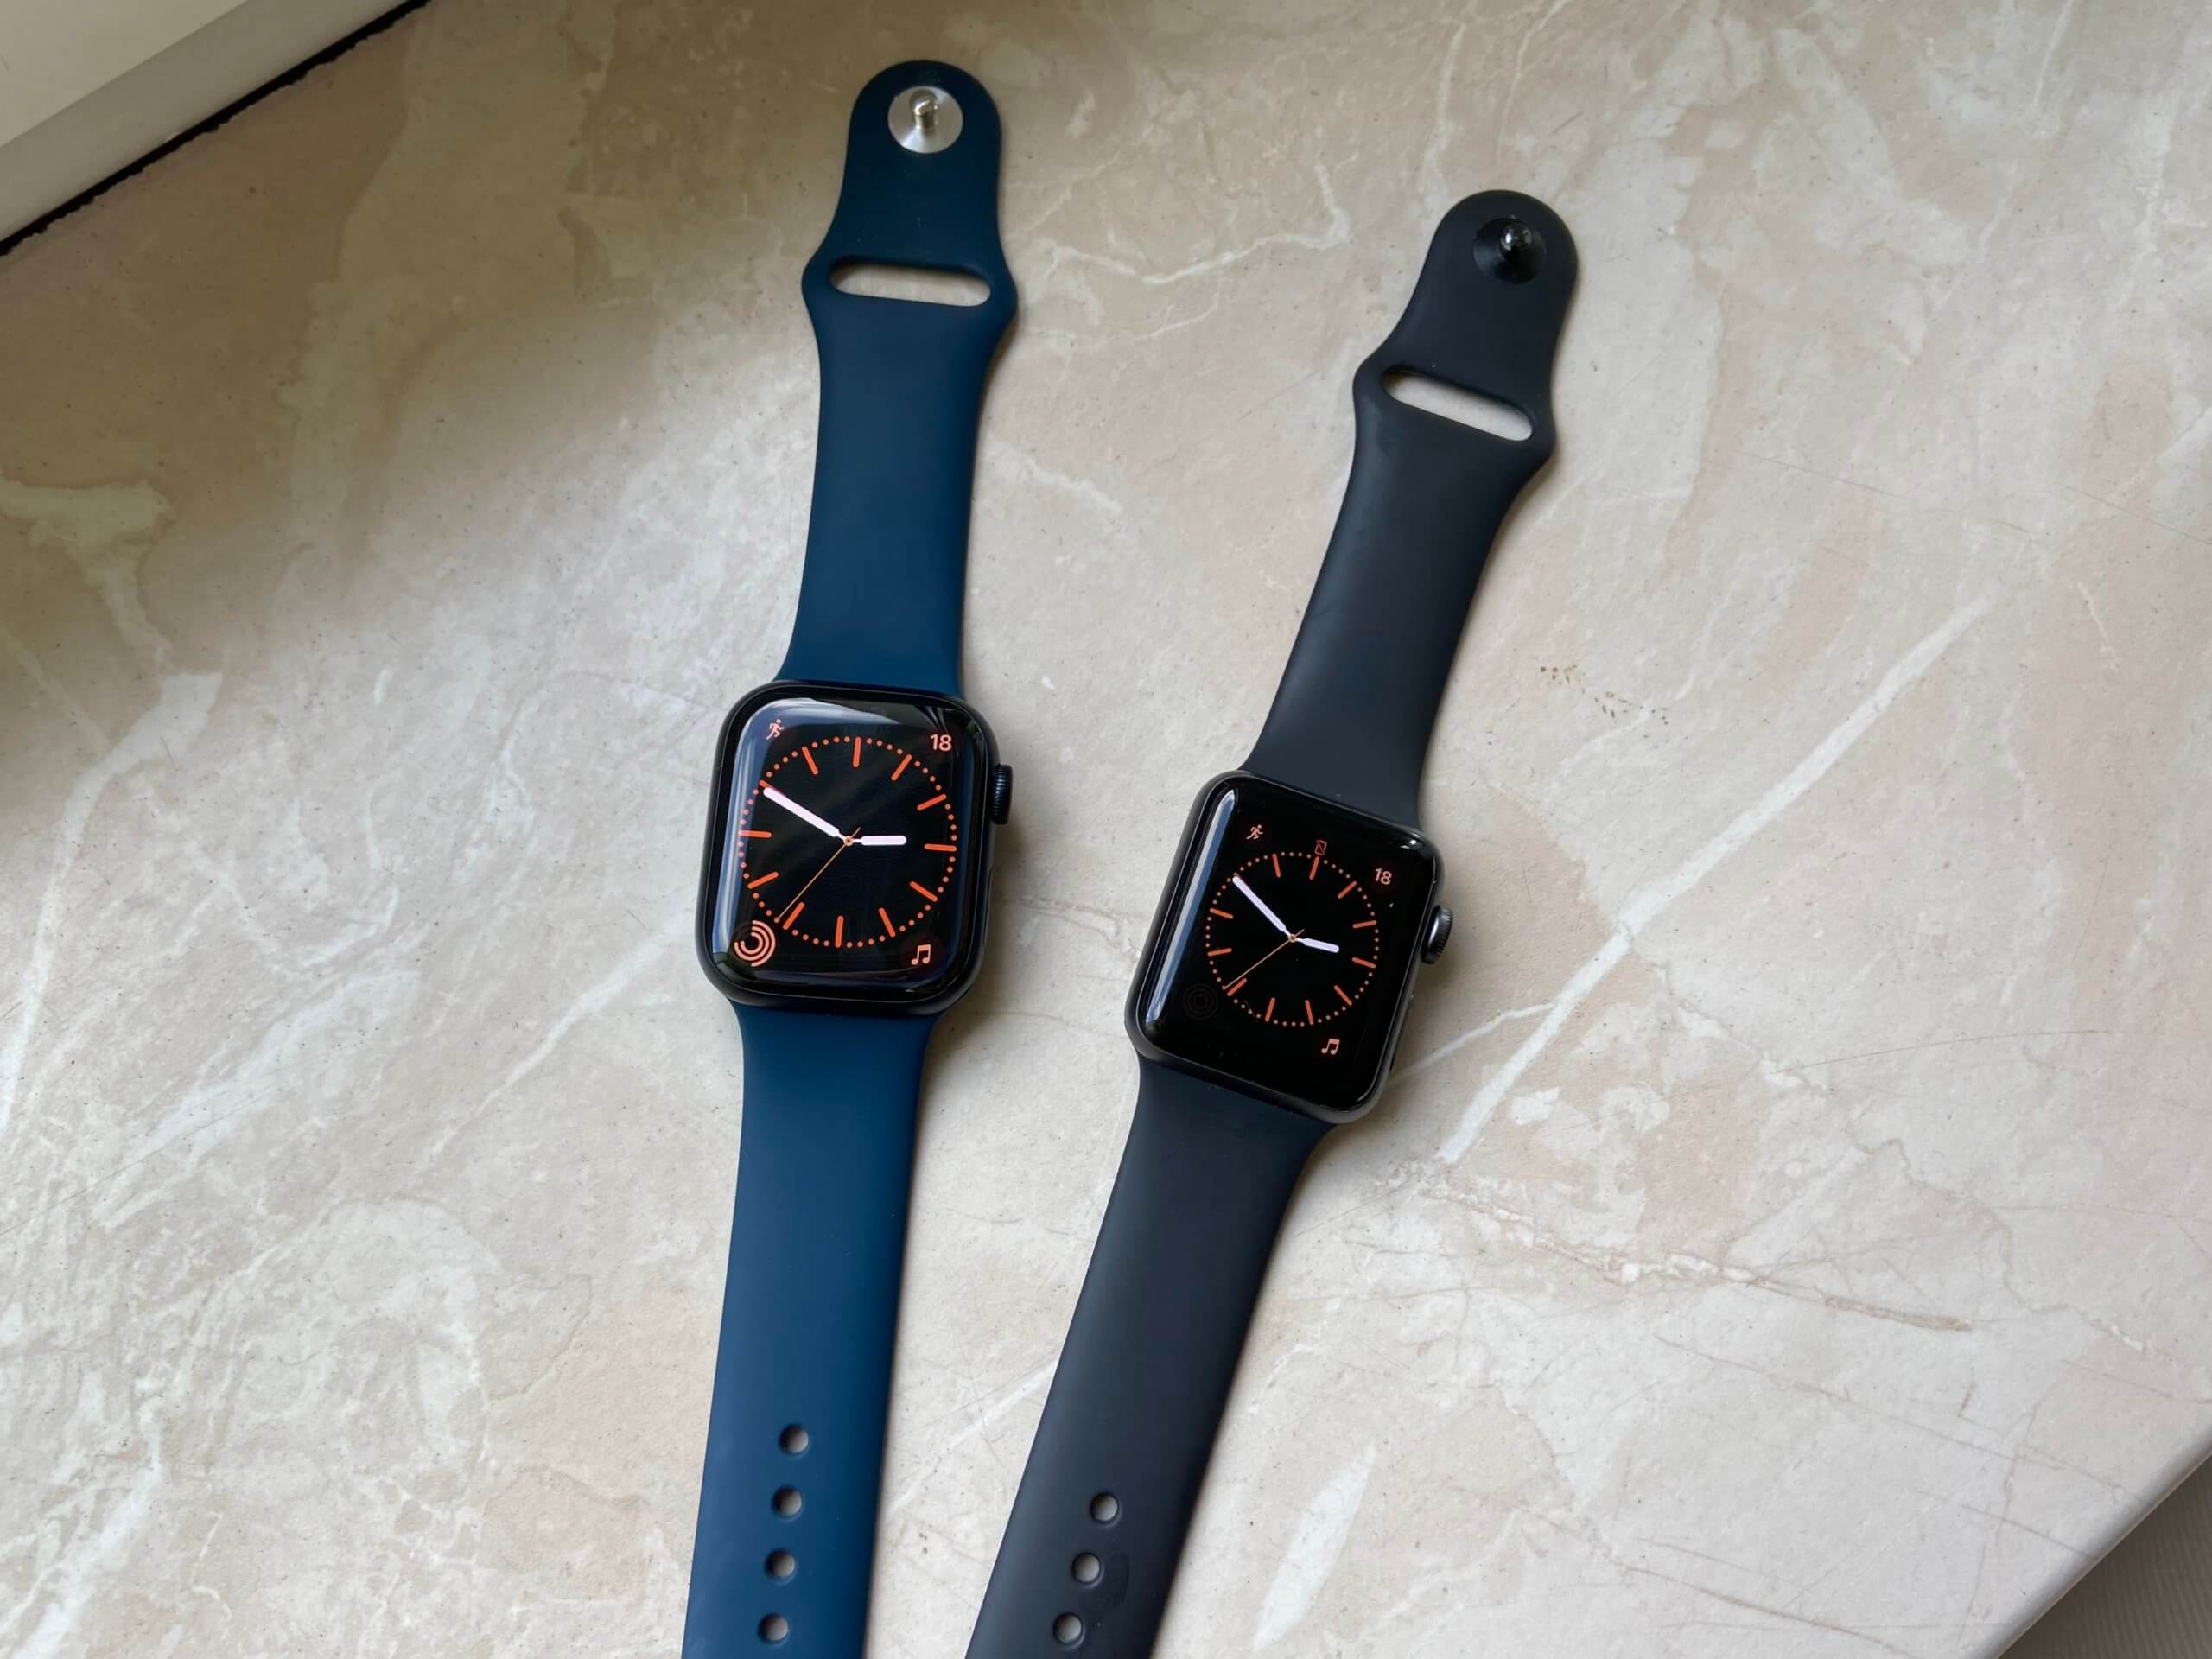 Apple Watch Series 7 Display